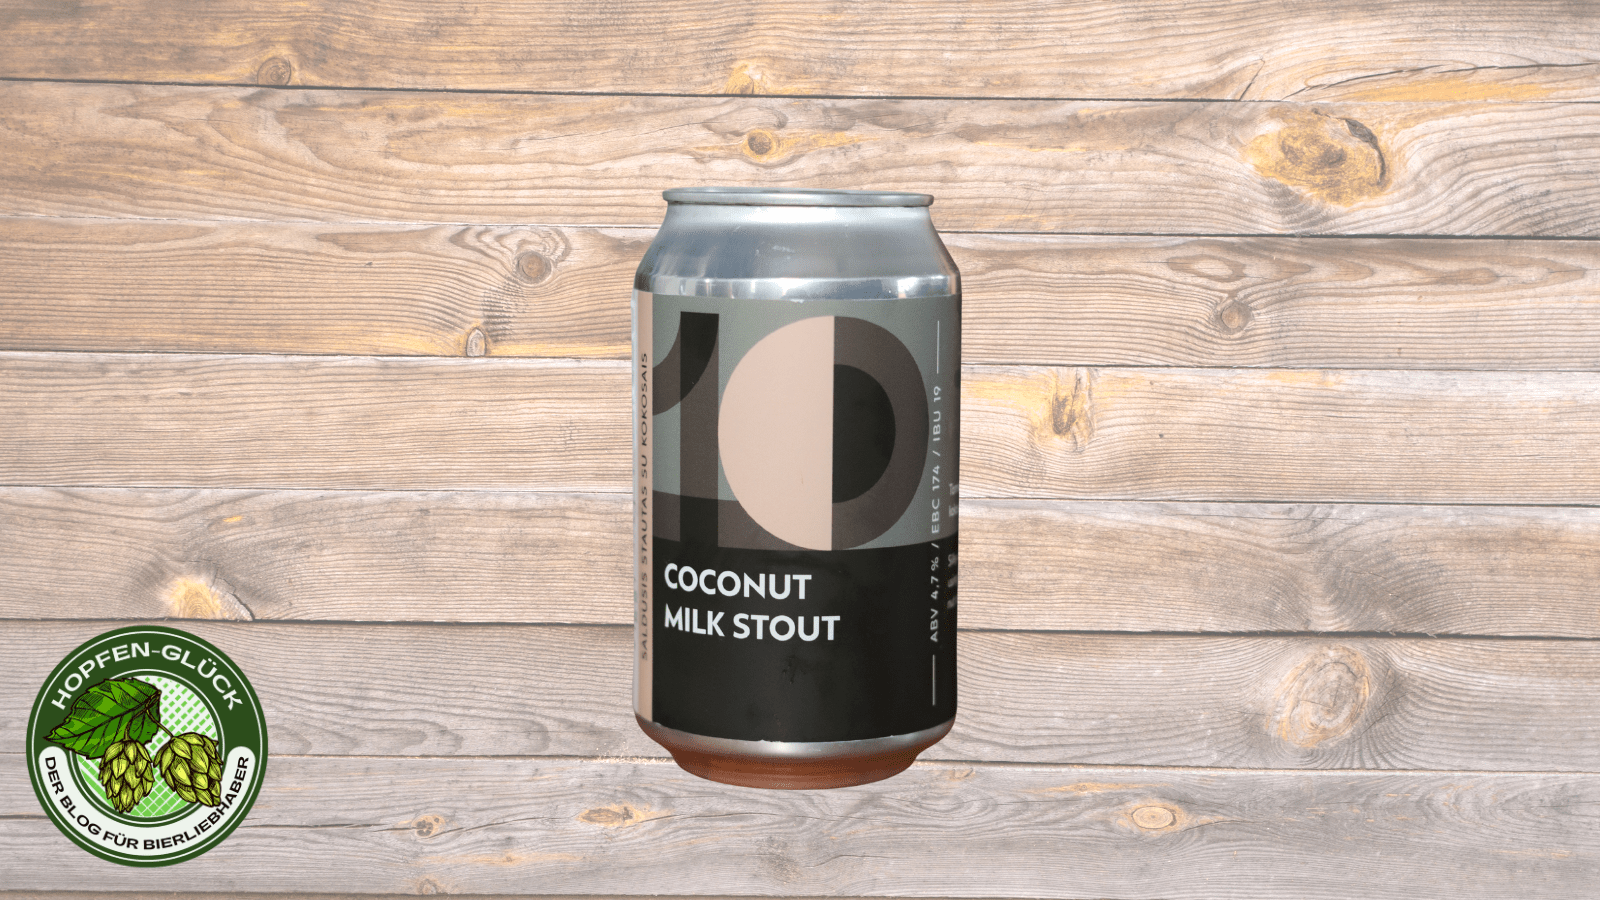 Sakiškės Brewery / Sakiškių Alus – Coconut Milk Stout